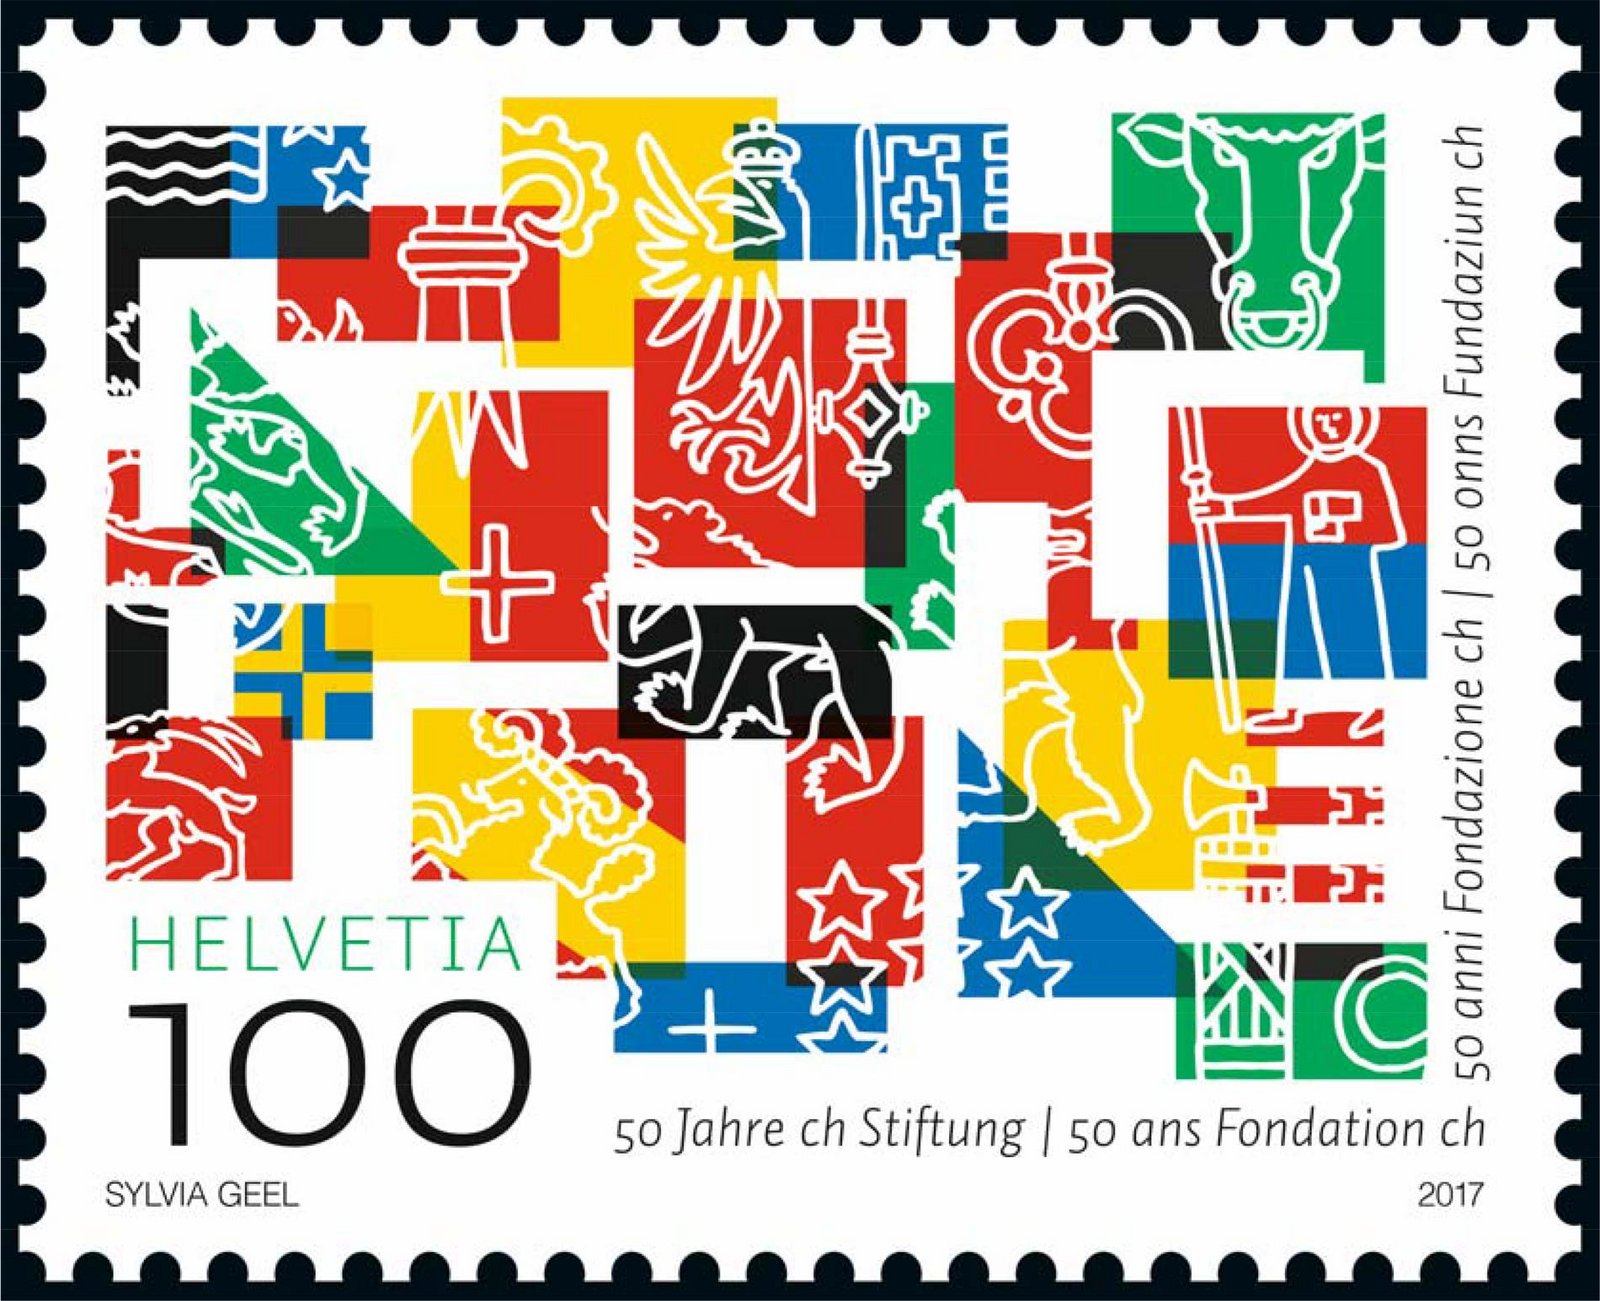 Ce timbre multicolore regroupe et mélange les couleurs et les symboles des écussons des 26 cantons suisses.